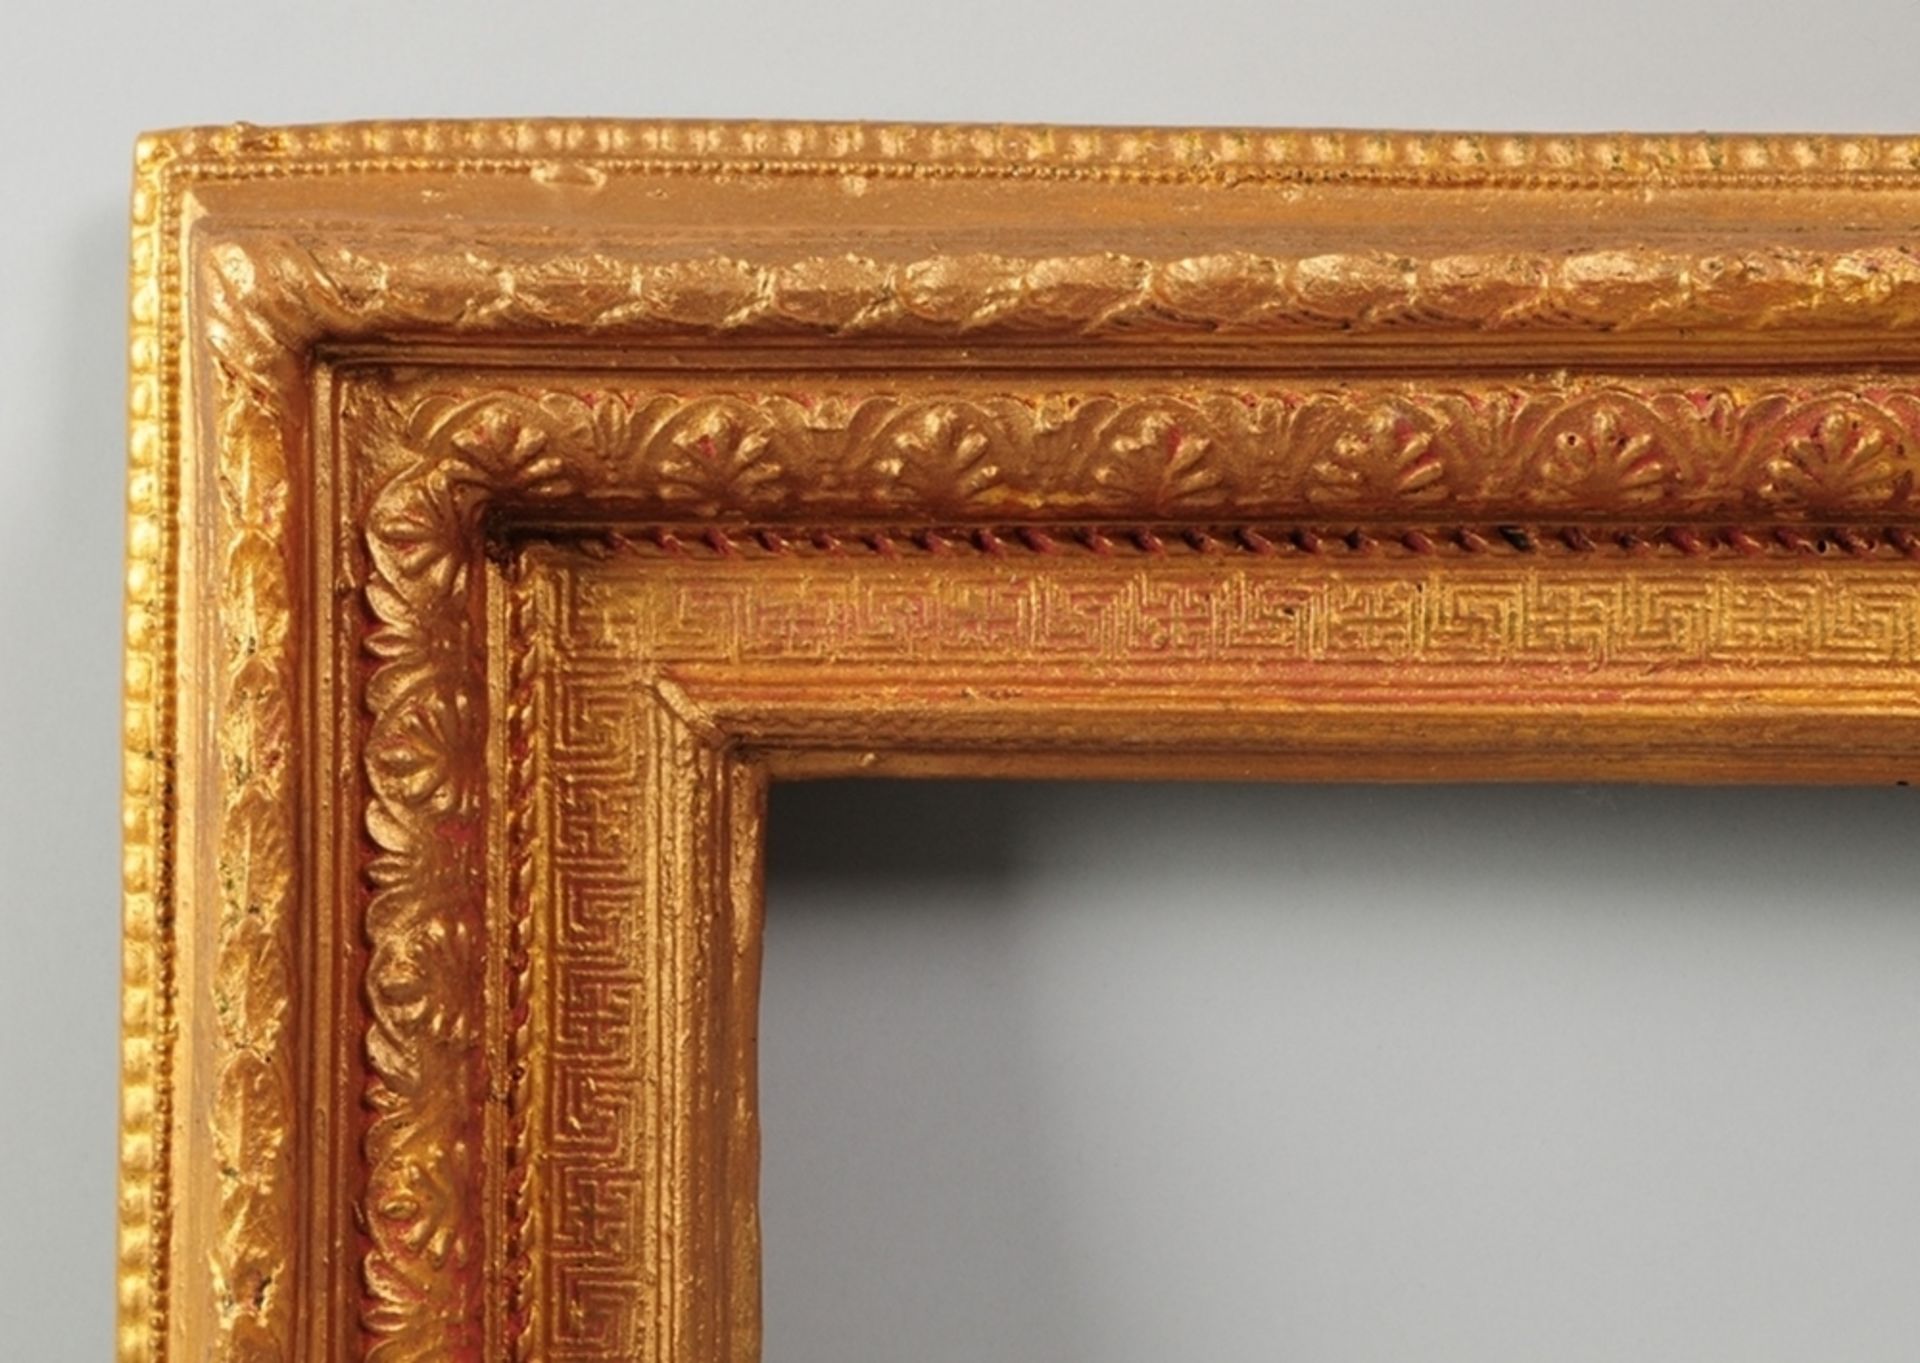 Rahmen im EmpirestilProfilierte Holzleisten, stuckiert u. vergoldet. Ornamentaler Reliefdekor - Bild 2 aus 2